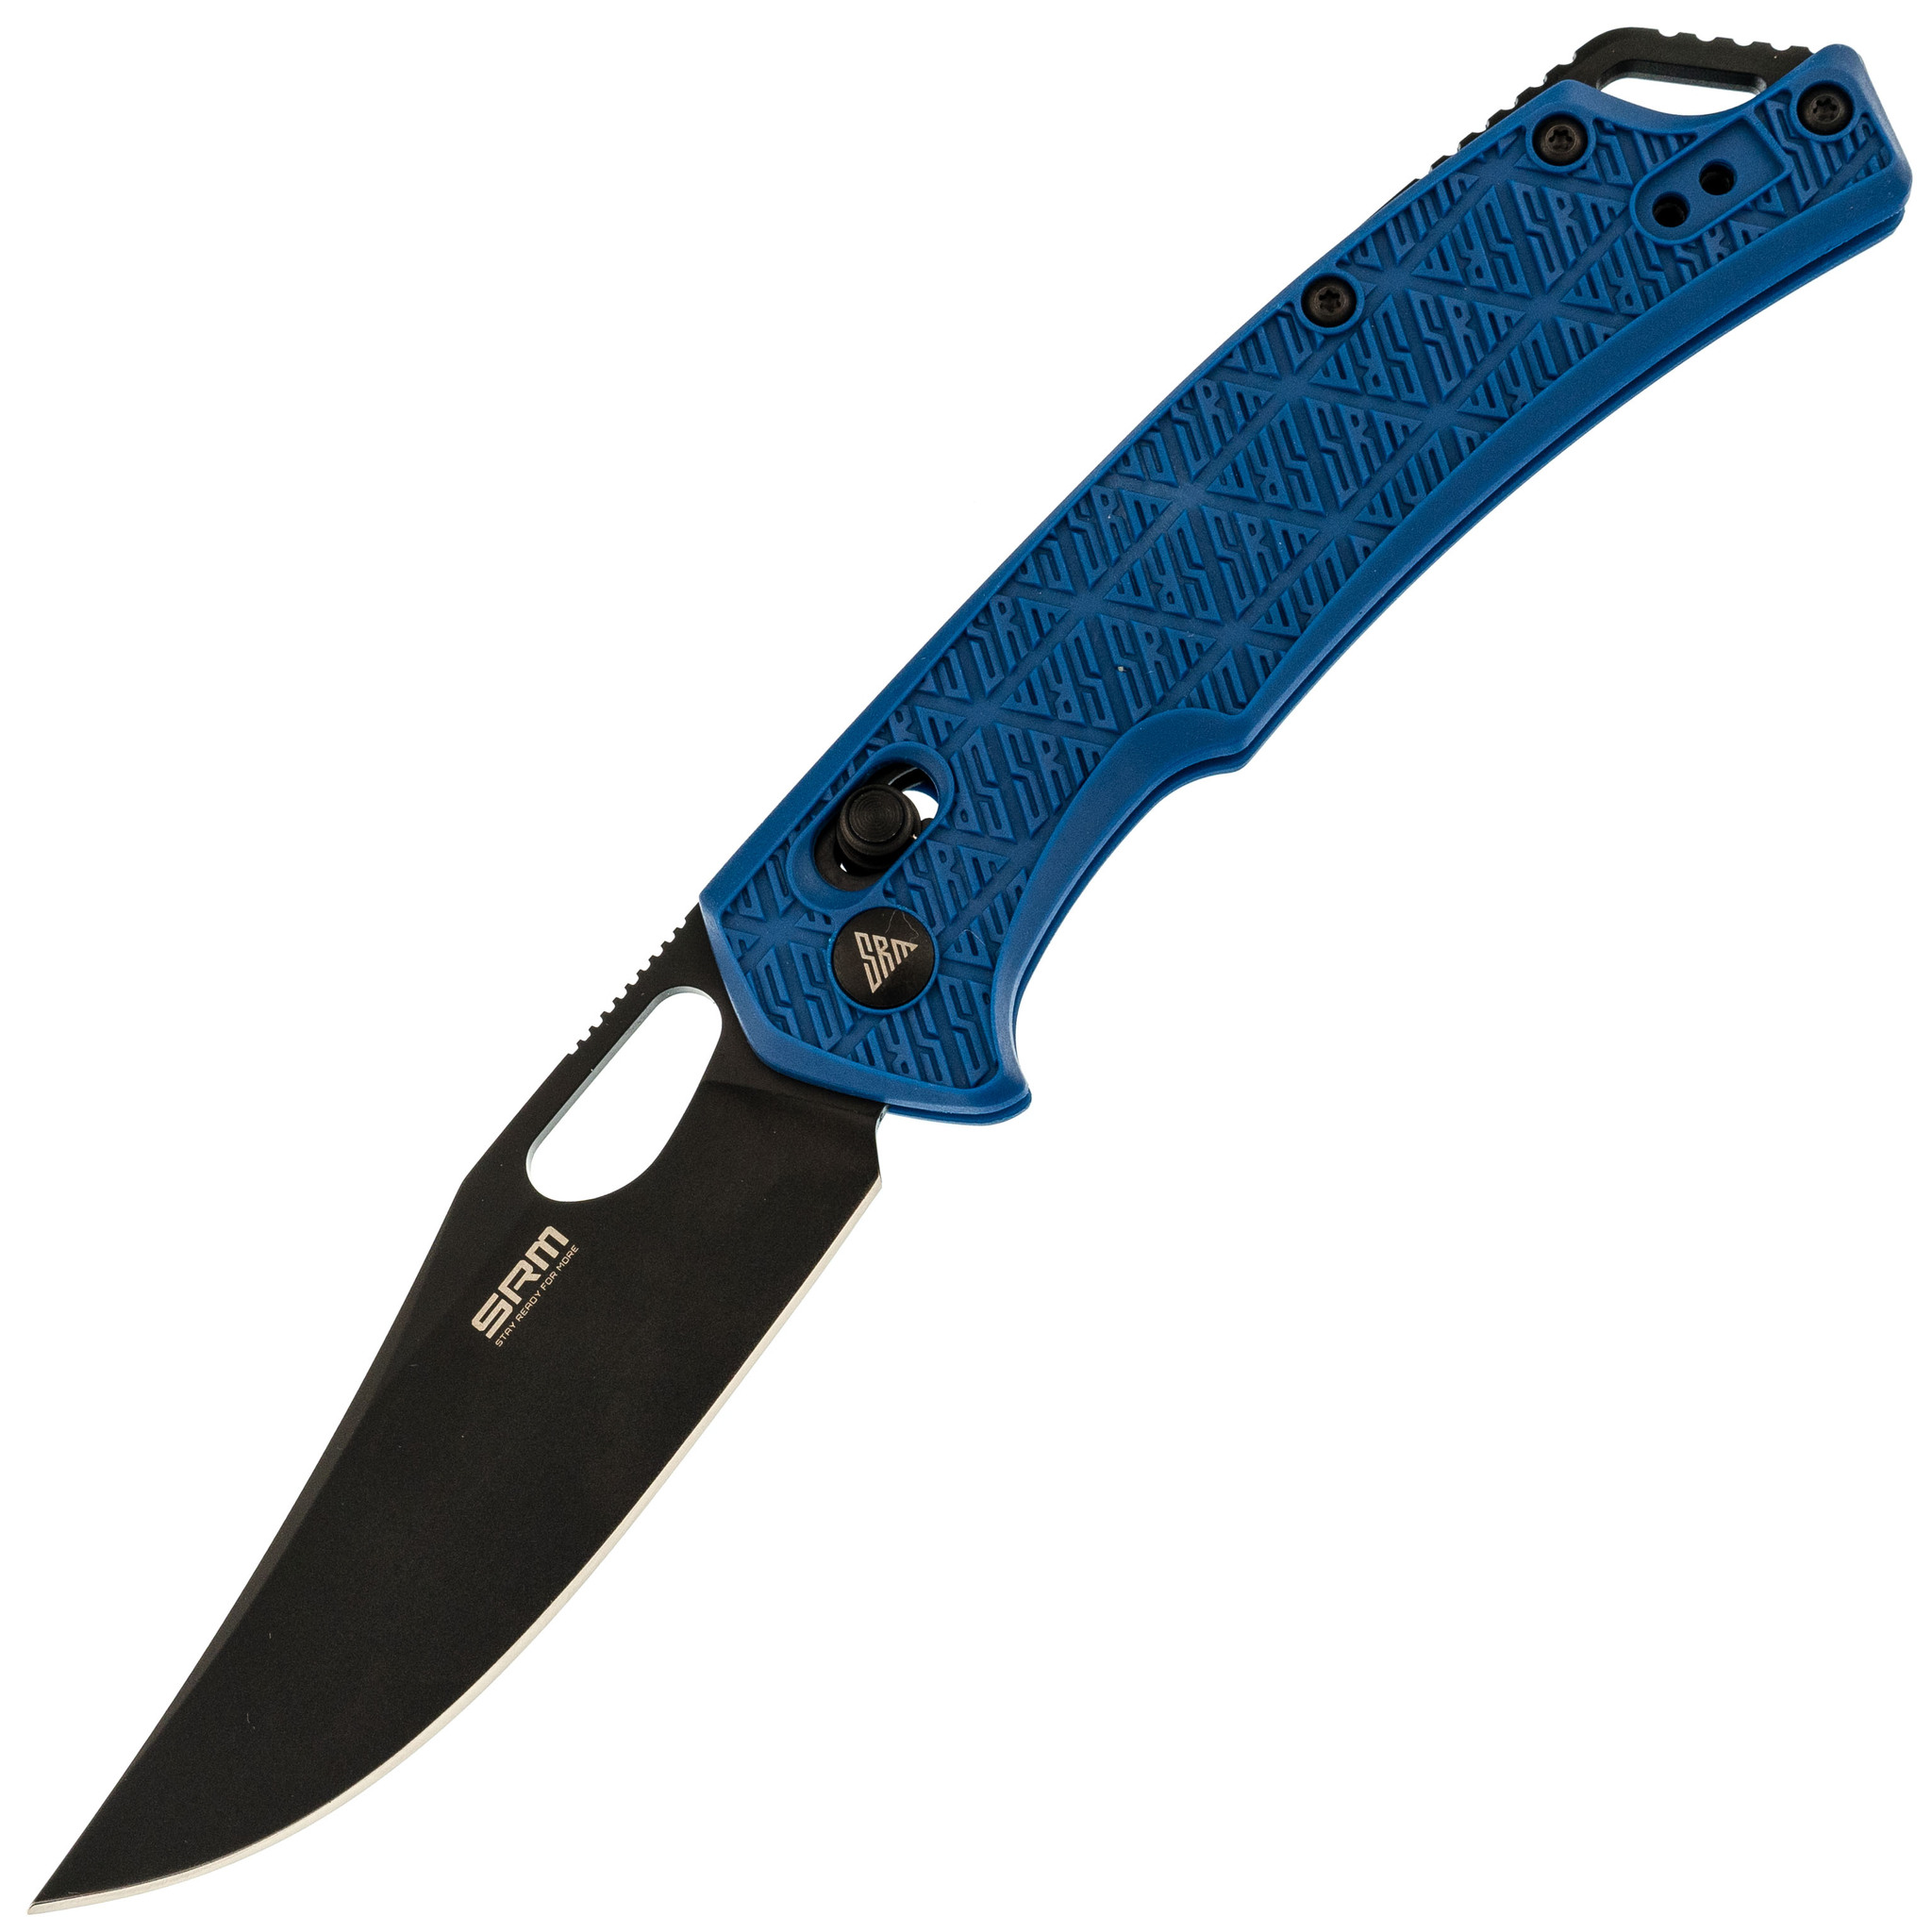 Складной нож SRM 9201, сталь 8Cr13MOV Blackwash, рукоять Blue FRN философия войны и мира насилия и ненасилия